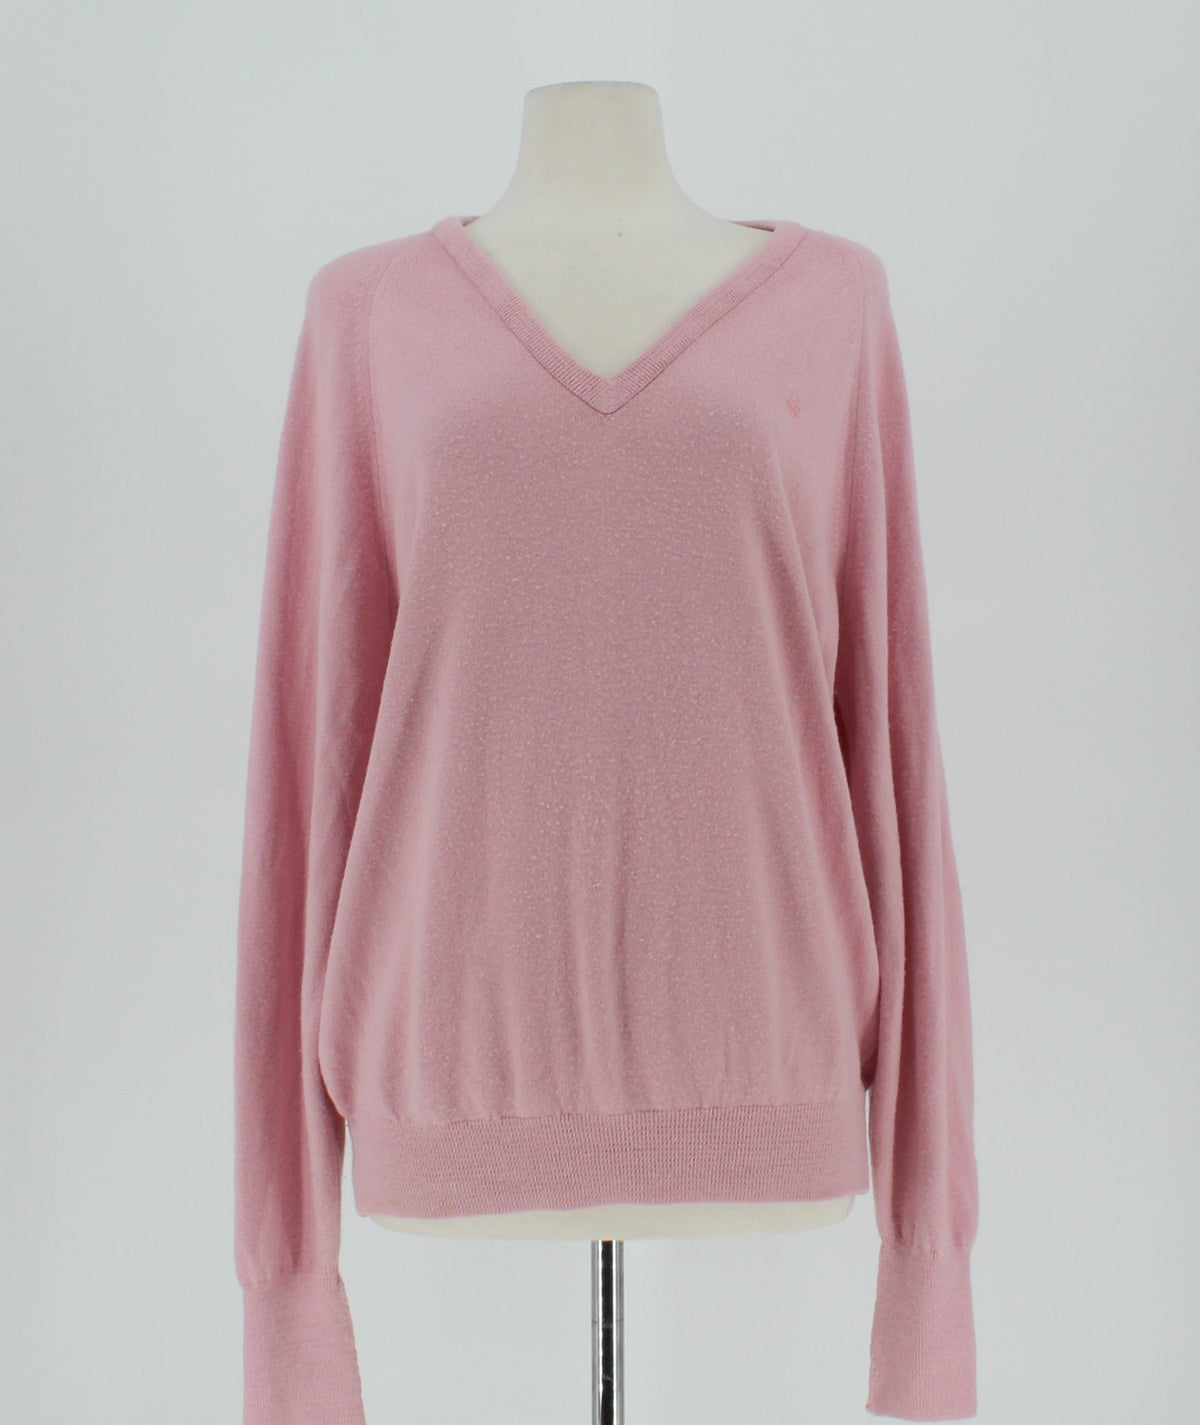 Vintage Christian Dior V-neck Pink Sweater